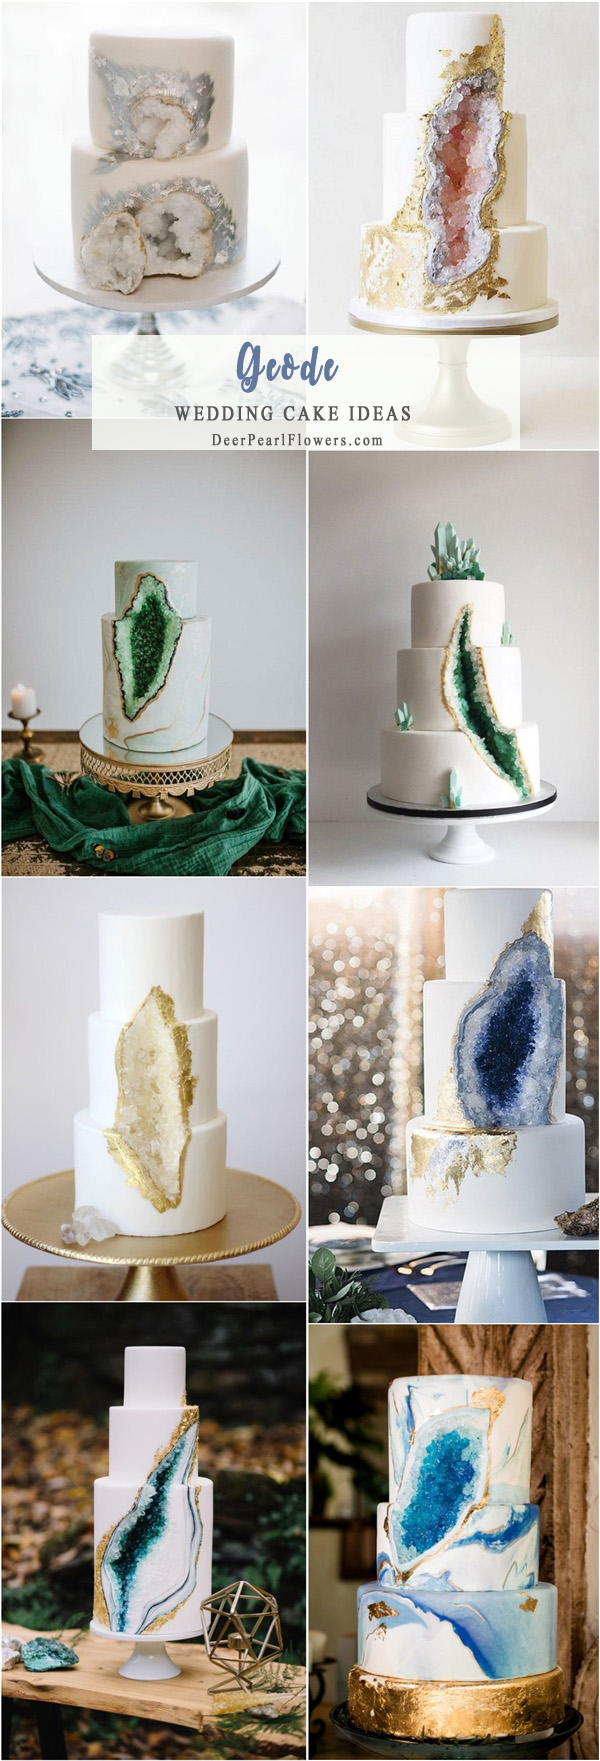 Geode wedding cake ideas